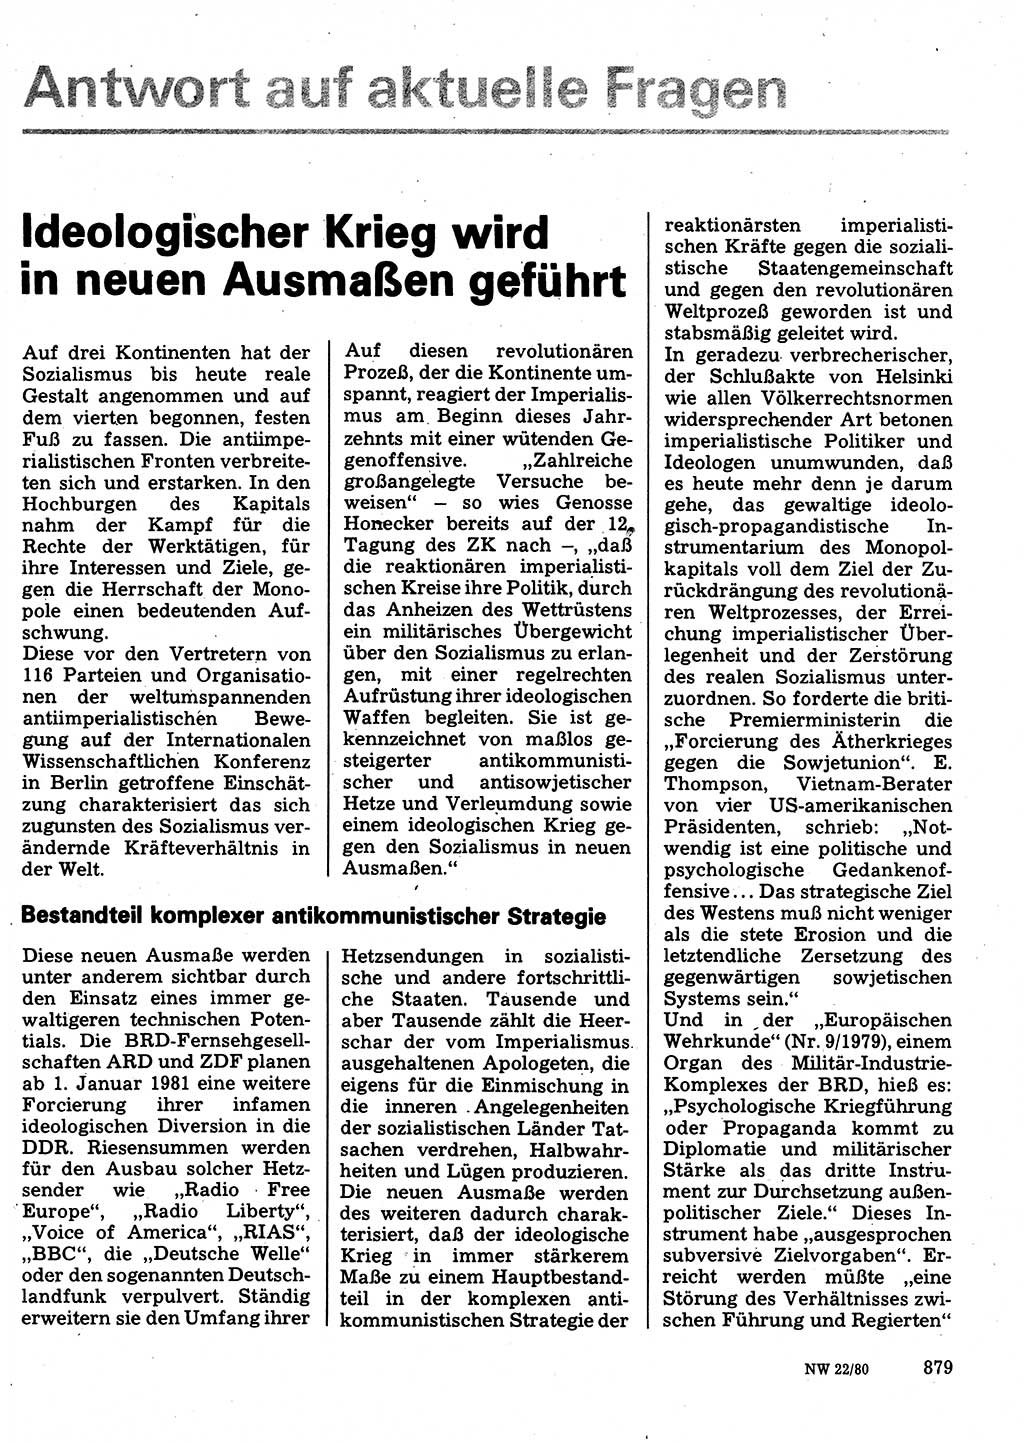 Neuer Weg (NW), Organ des Zentralkomitees (ZK) der SED (Sozialistische Einheitspartei Deutschlands) für Fragen des Parteilebens, 35. Jahrgang [Deutsche Demokratische Republik (DDR)] 1980, Seite 879 (NW ZK SED DDR 1980, S. 879)